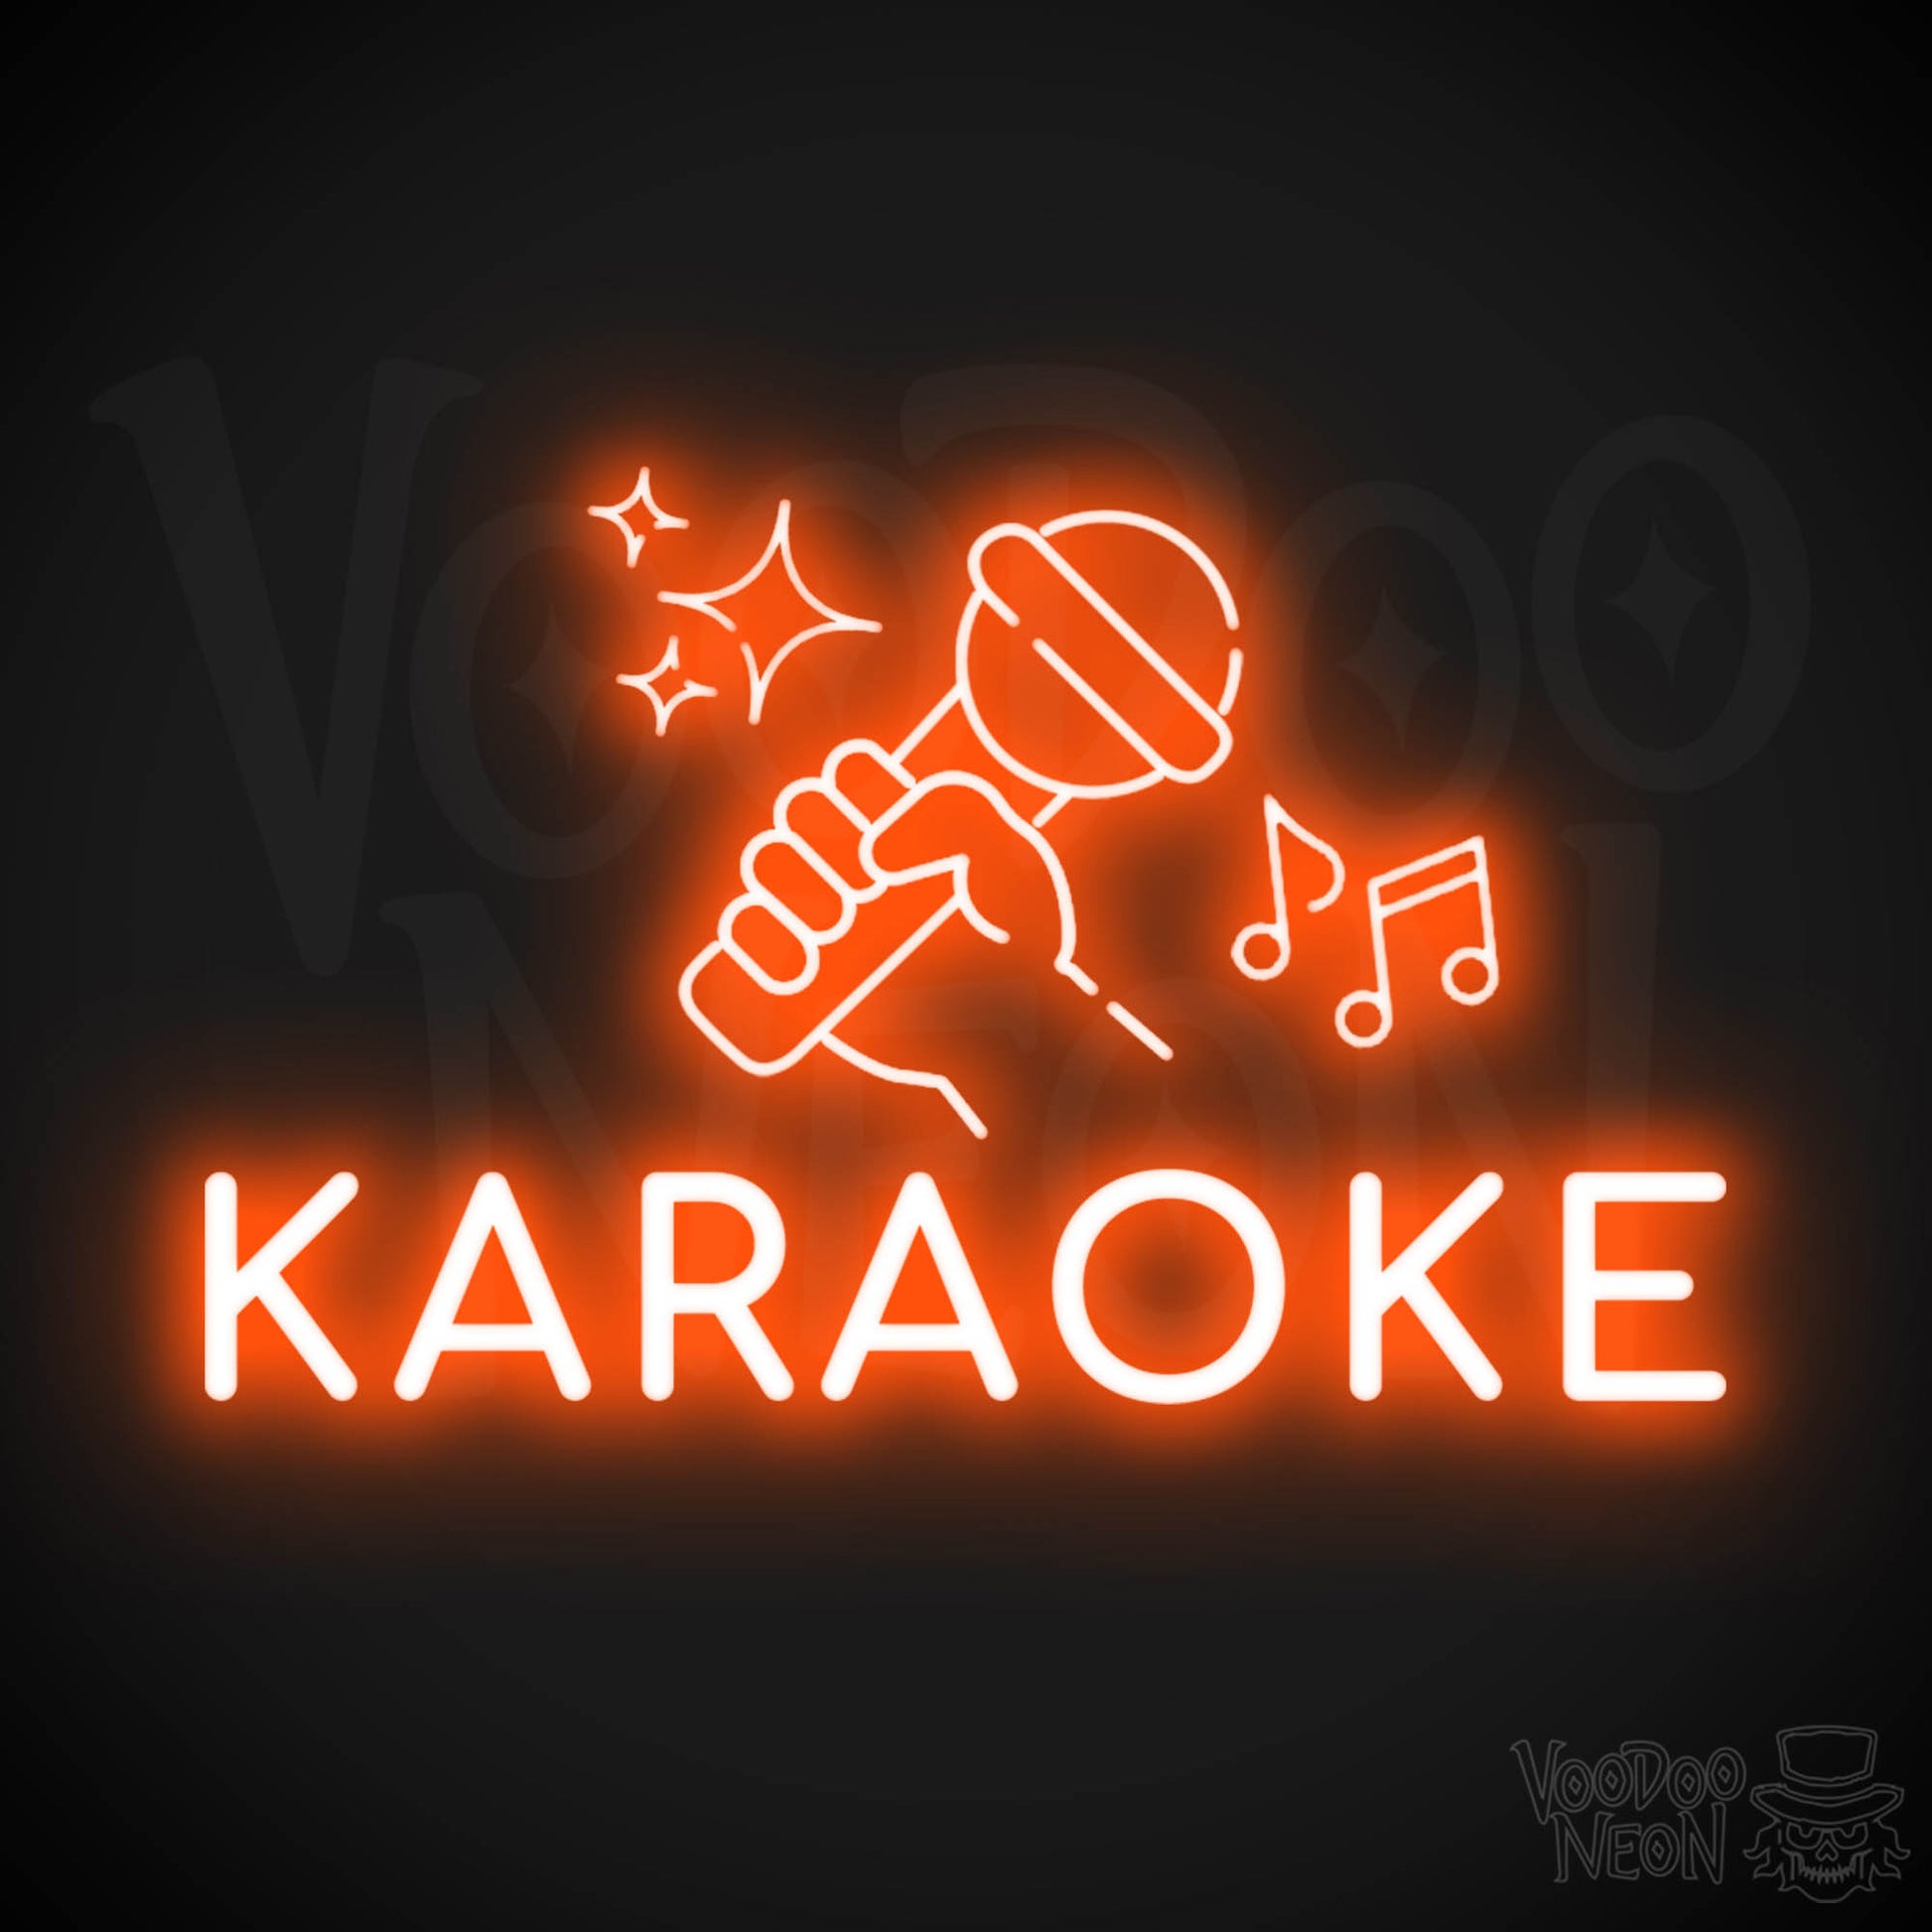 Karaoke Neon Sign - Neon Karaoke Sign - LED Wall Art - Color Orange